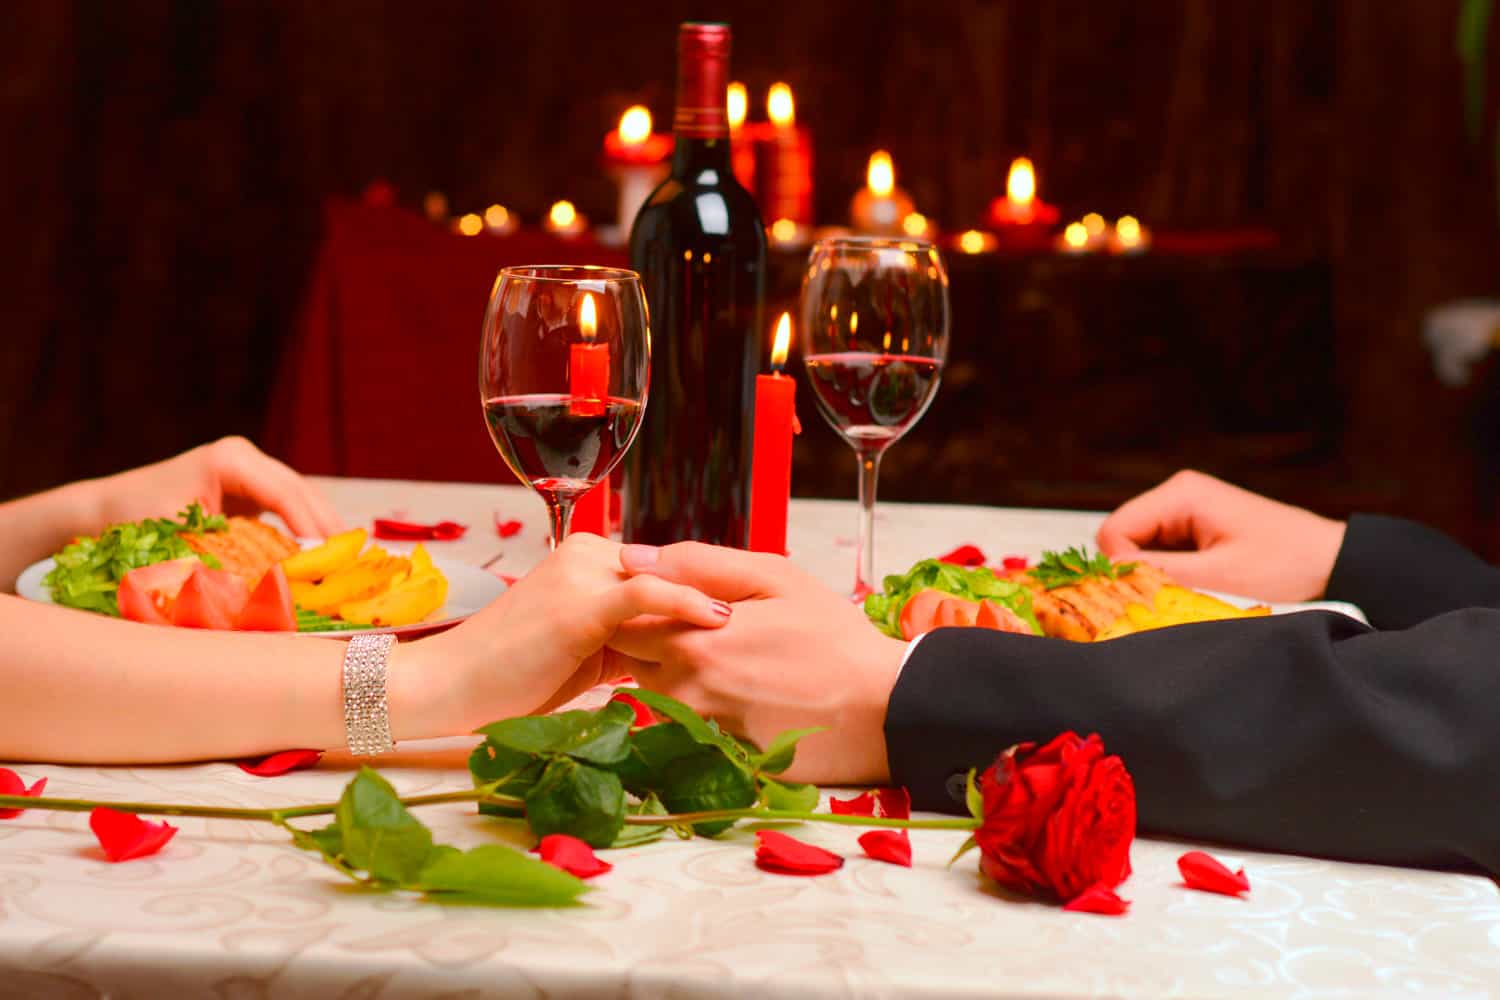 Cena romántica en casa: Receta para una noche inolvidable